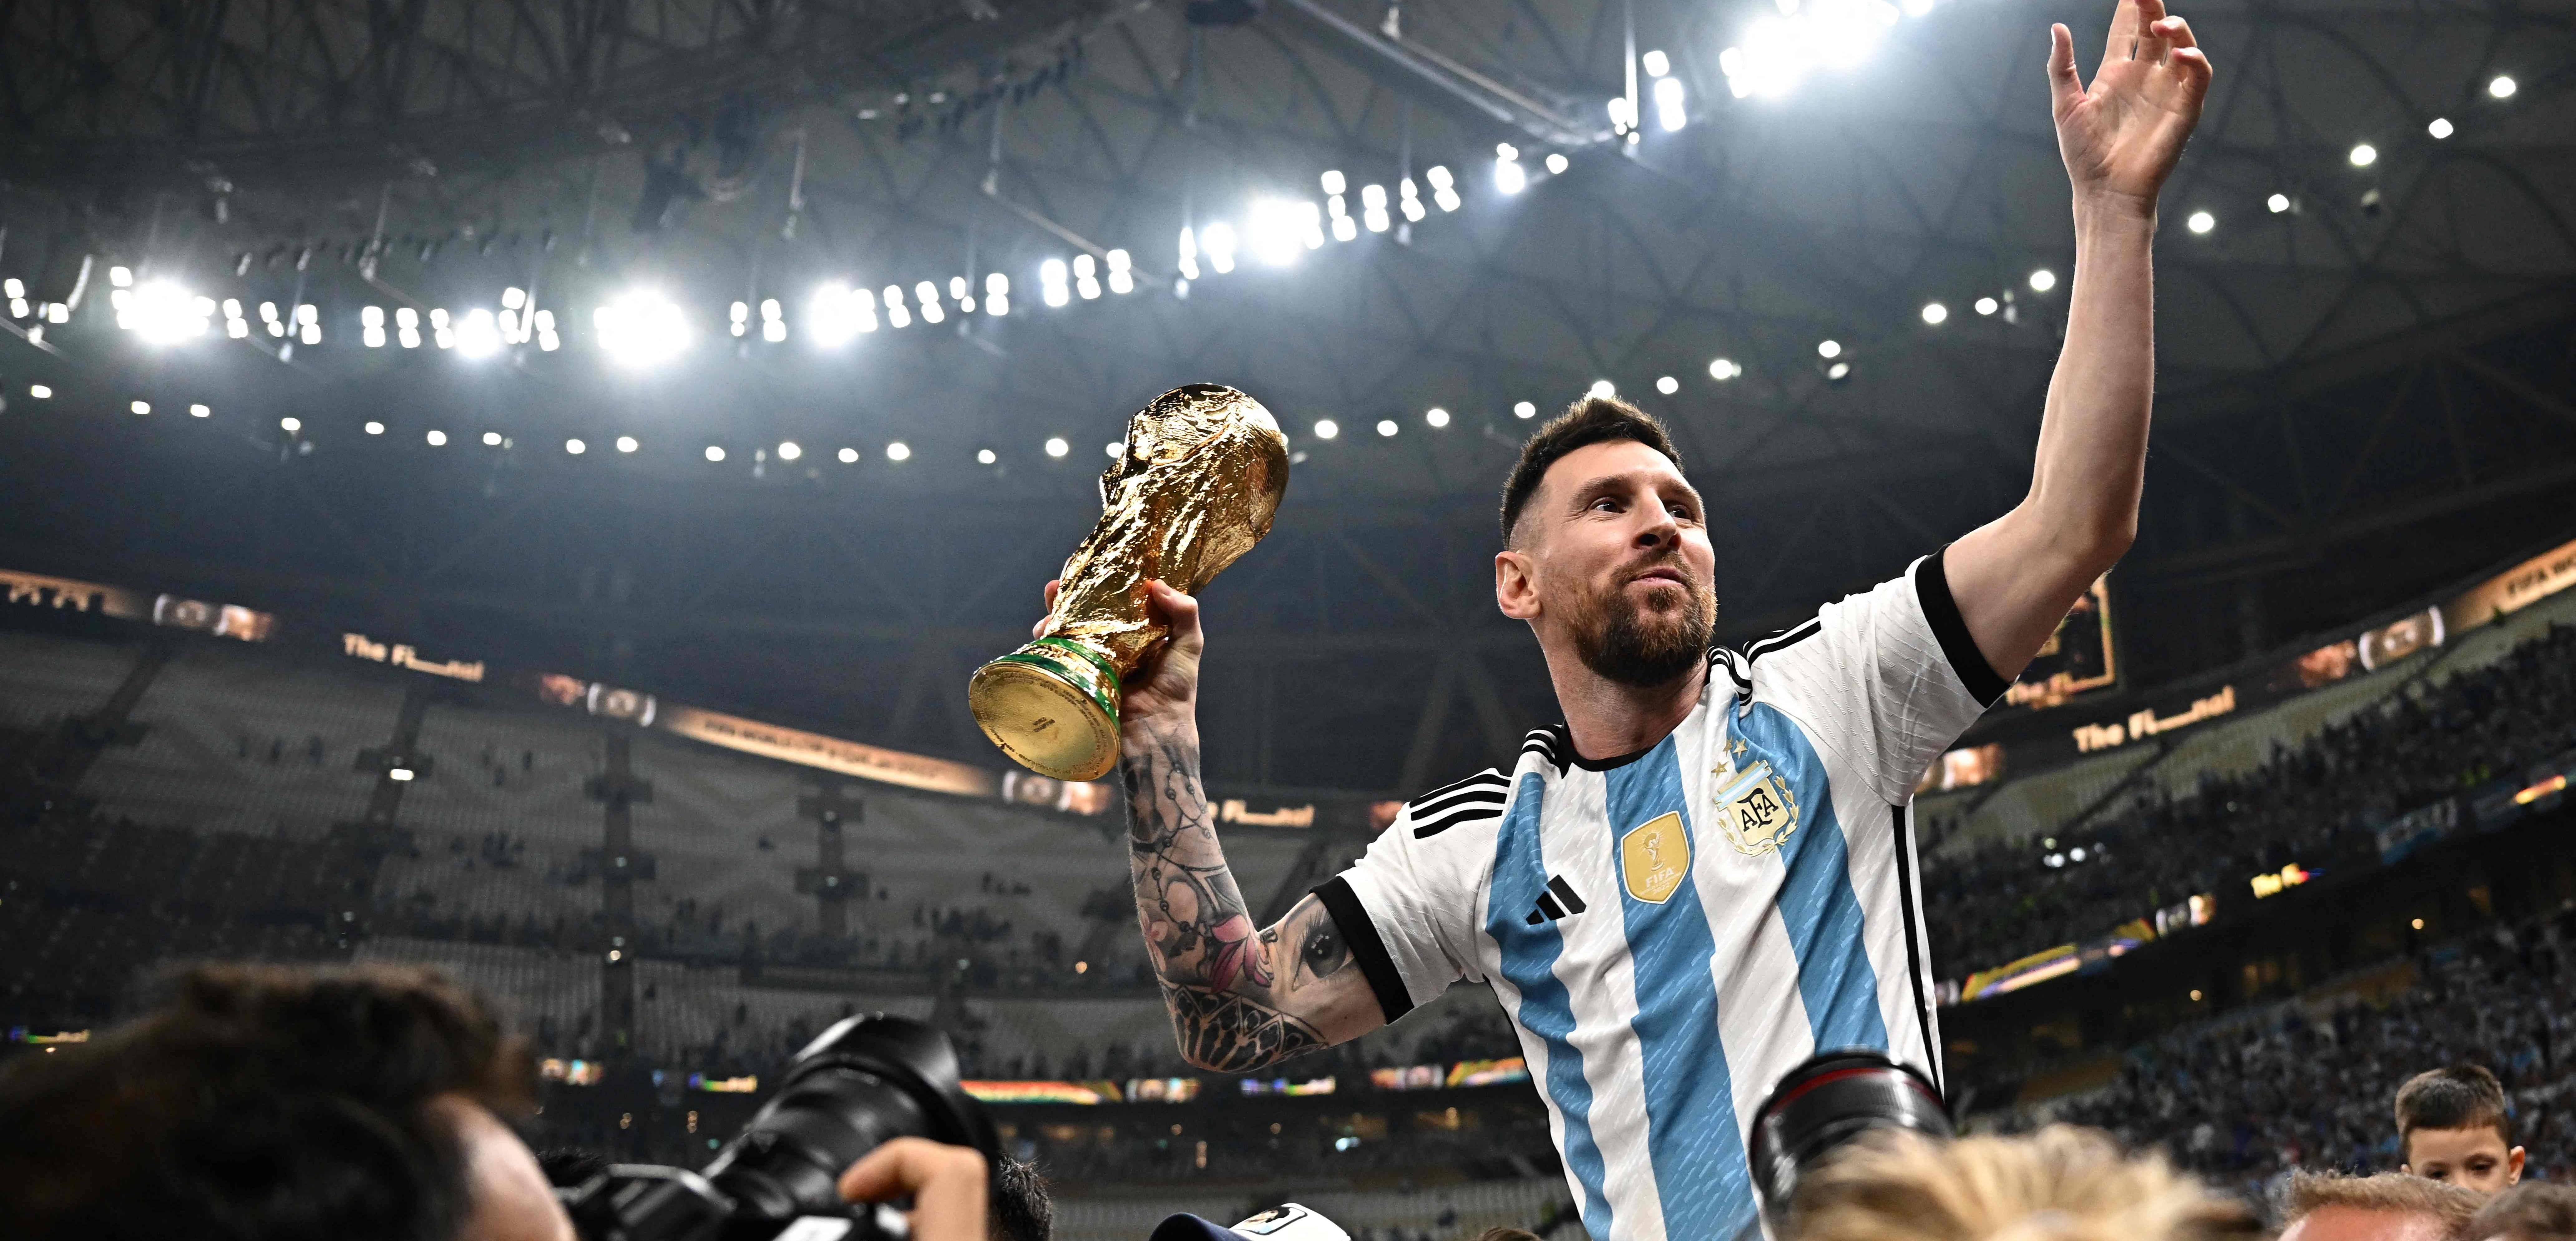 El capitán de la selección argentina, Lionel Messi, levanta el trofeo de la FIFA luego de ganarle la final a Francia en Catar 2022. (Foto Prensa Libre: AFP)